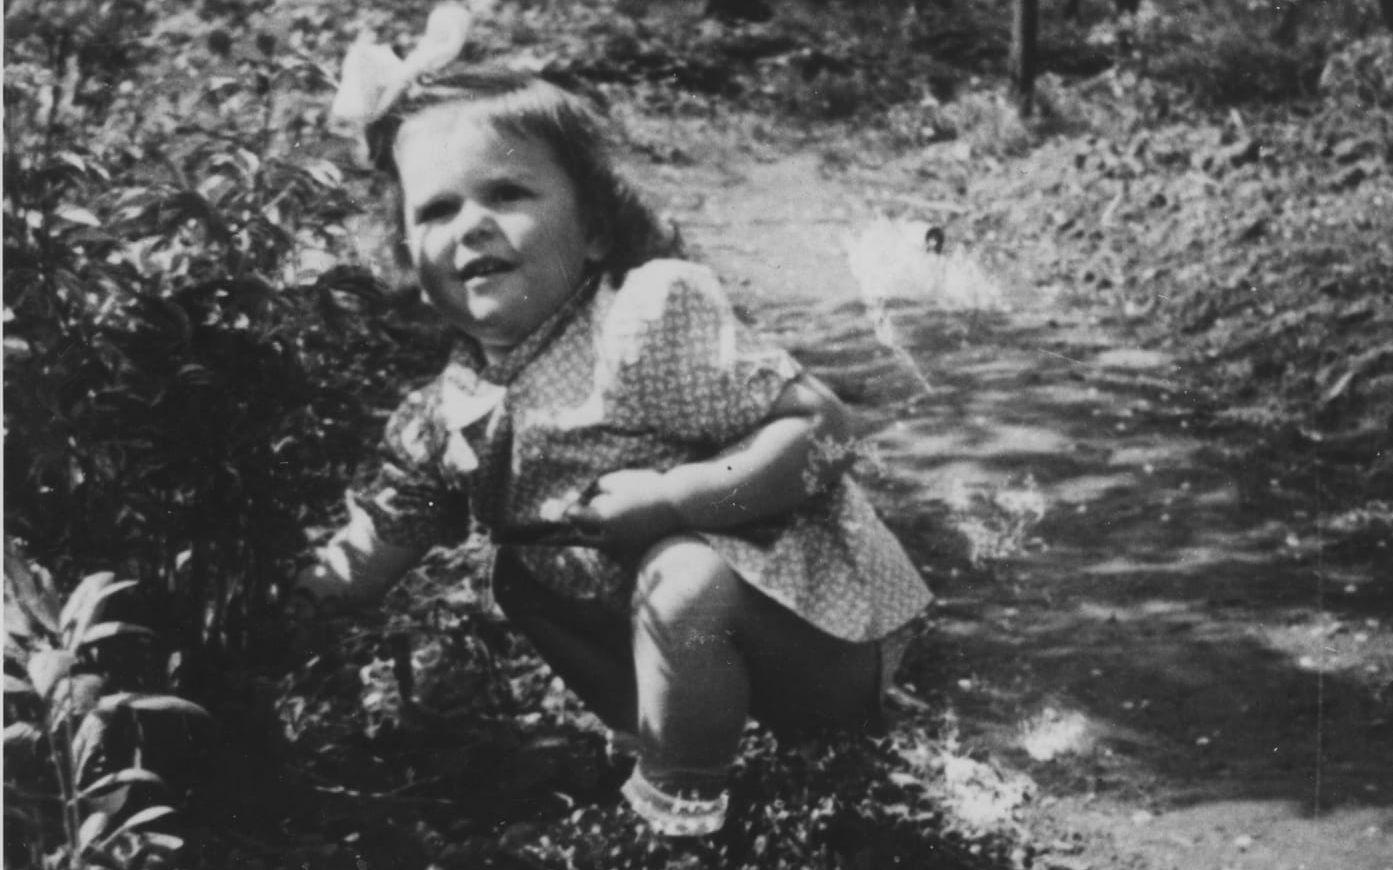 1947: Silvia är 3,5 år gammal på den här bilden som är tagen i Heidelberg den sommaren.